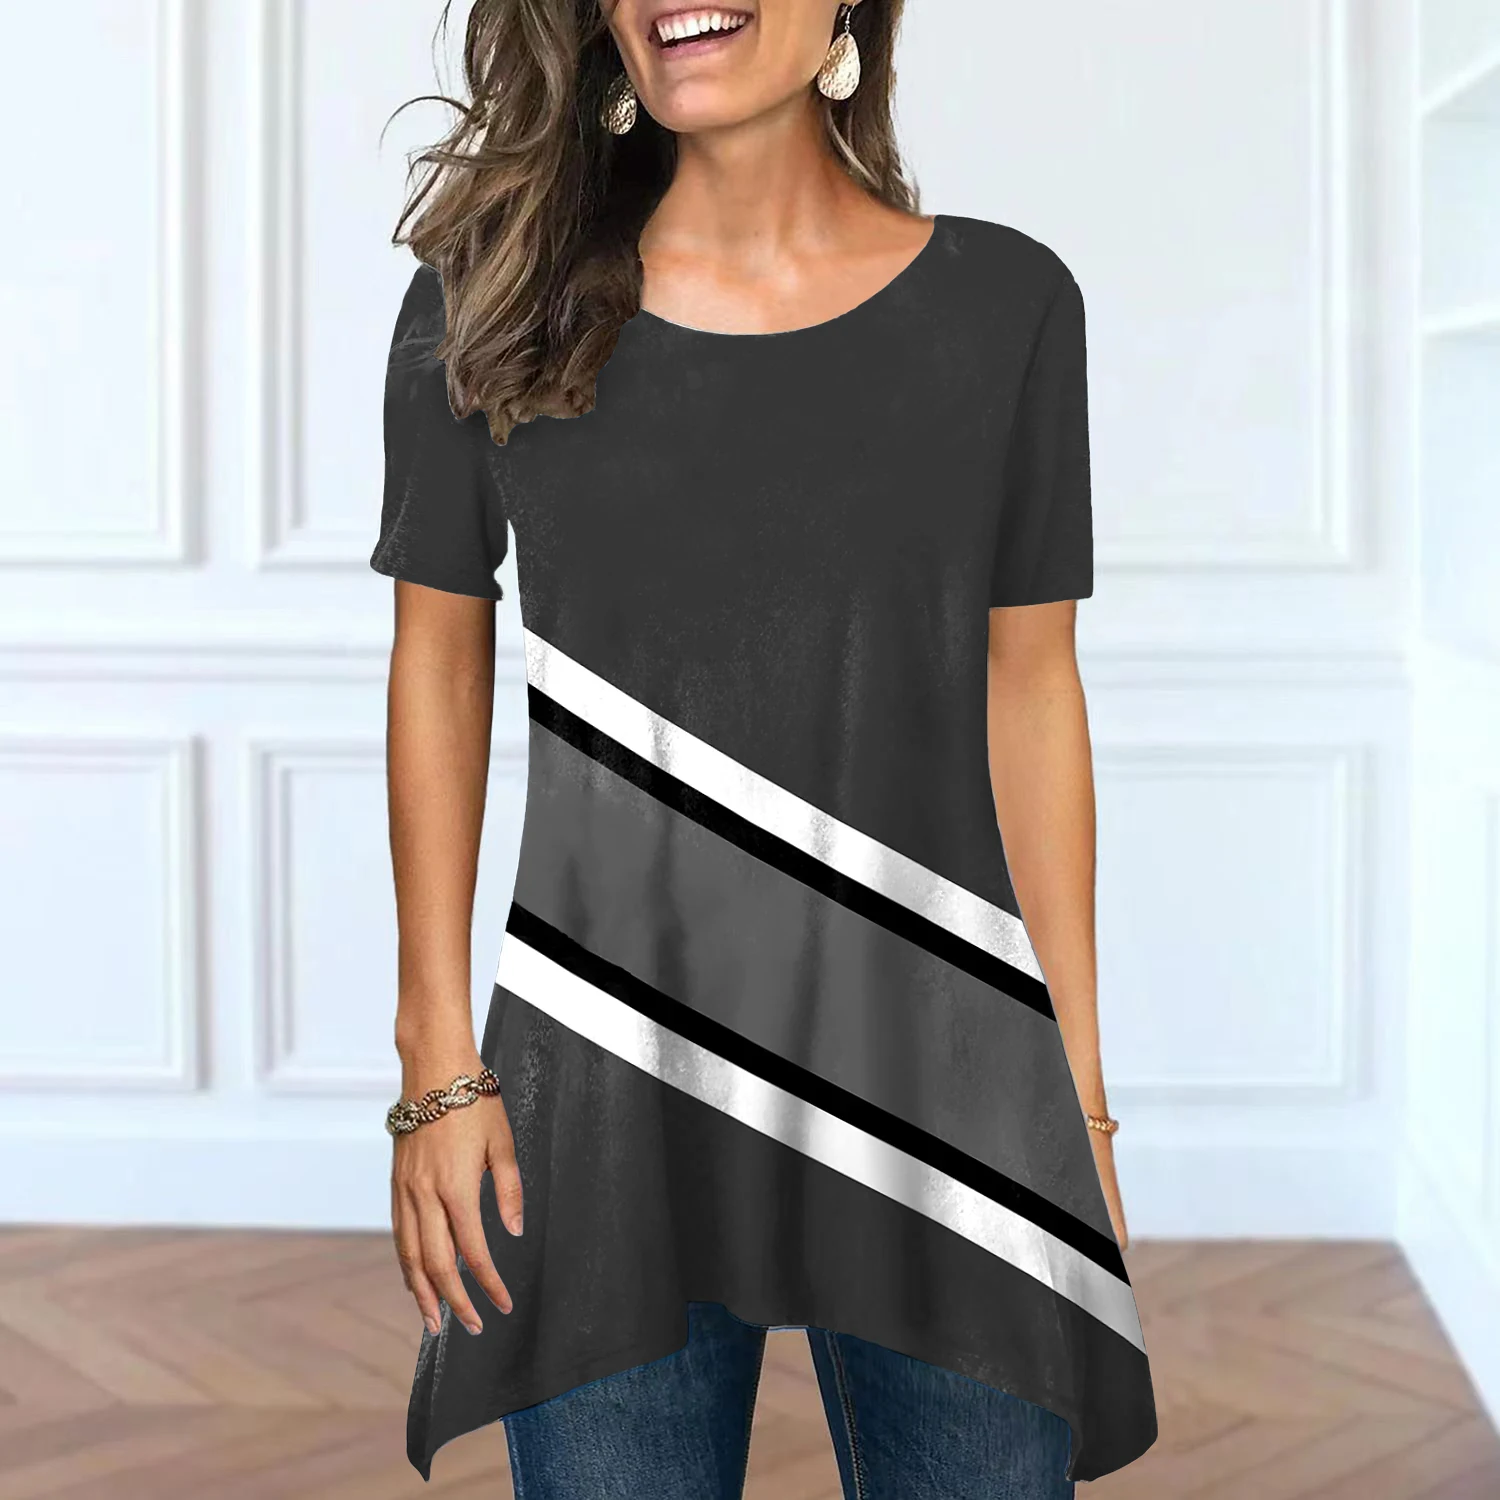 새로운 T- 셔츠 그래픽 3D 트라이 경로 인쇄 티셔츠 여성 O- 넥 짧은 슬리브 의류 셔츠 스포츠 작물 탑 XS-8XL